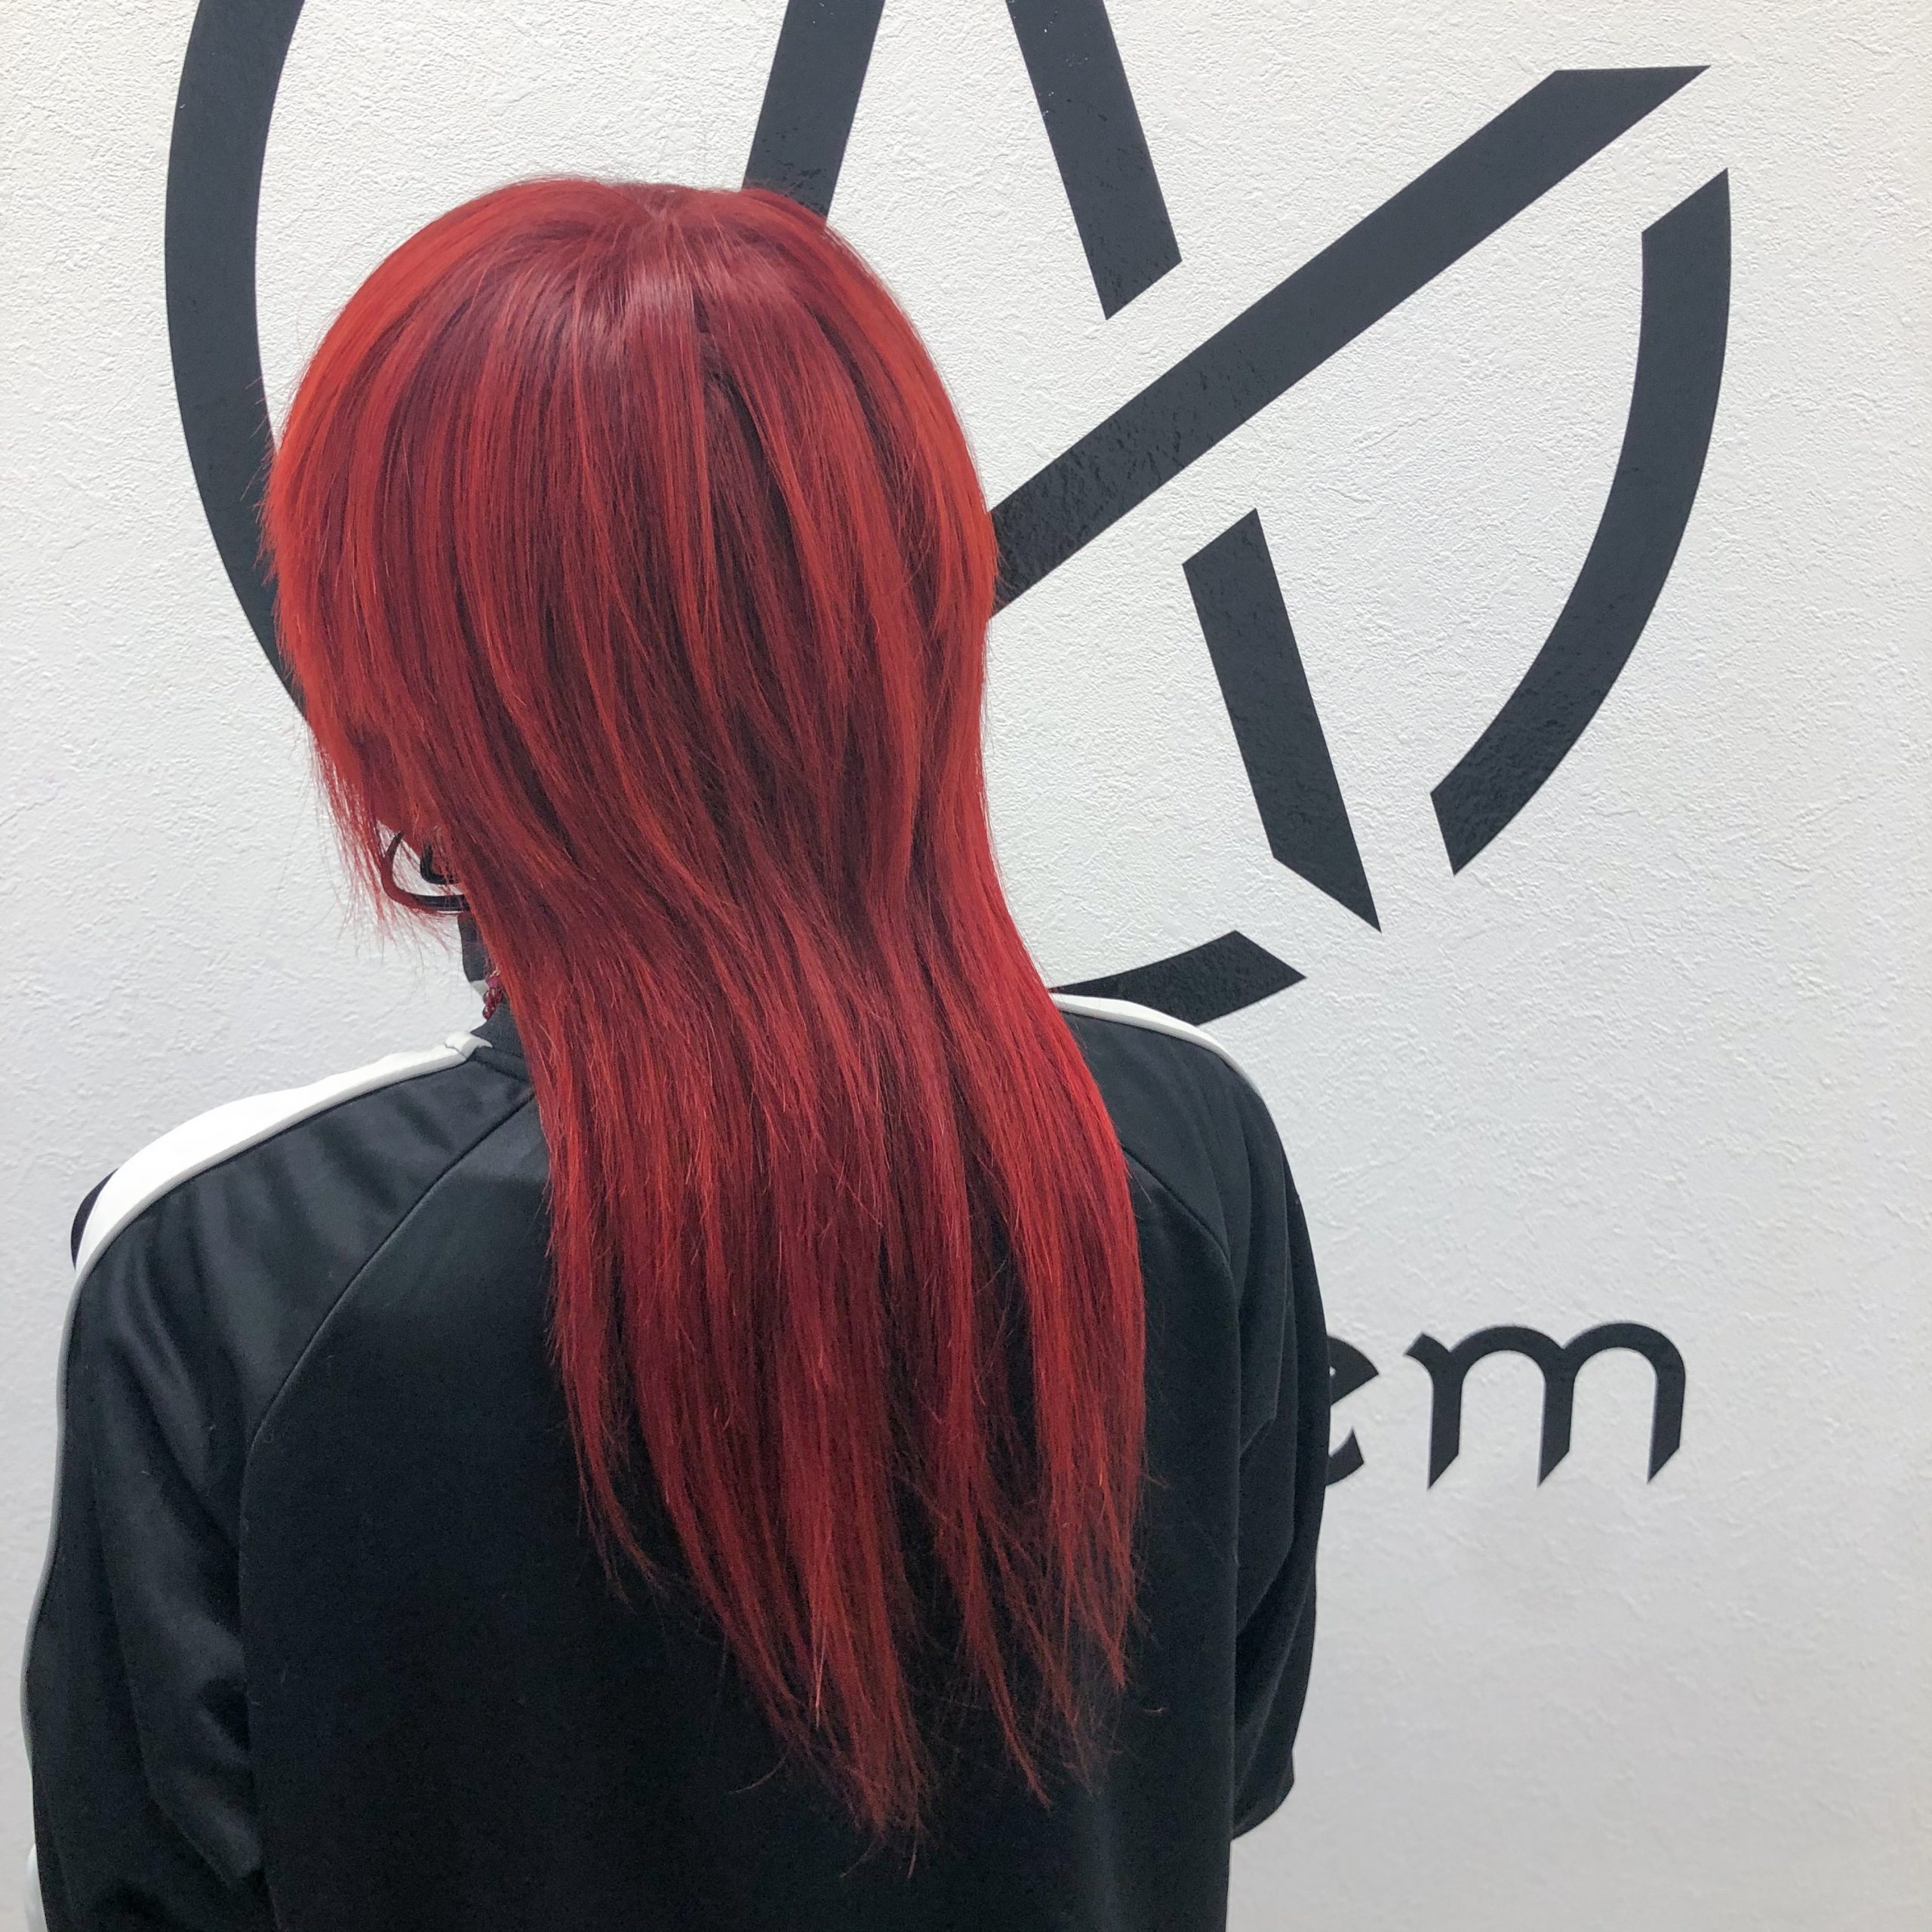 Hanaが赤系の髪色を作るときに愛用している薬剤一覧 Hanaカラーログ